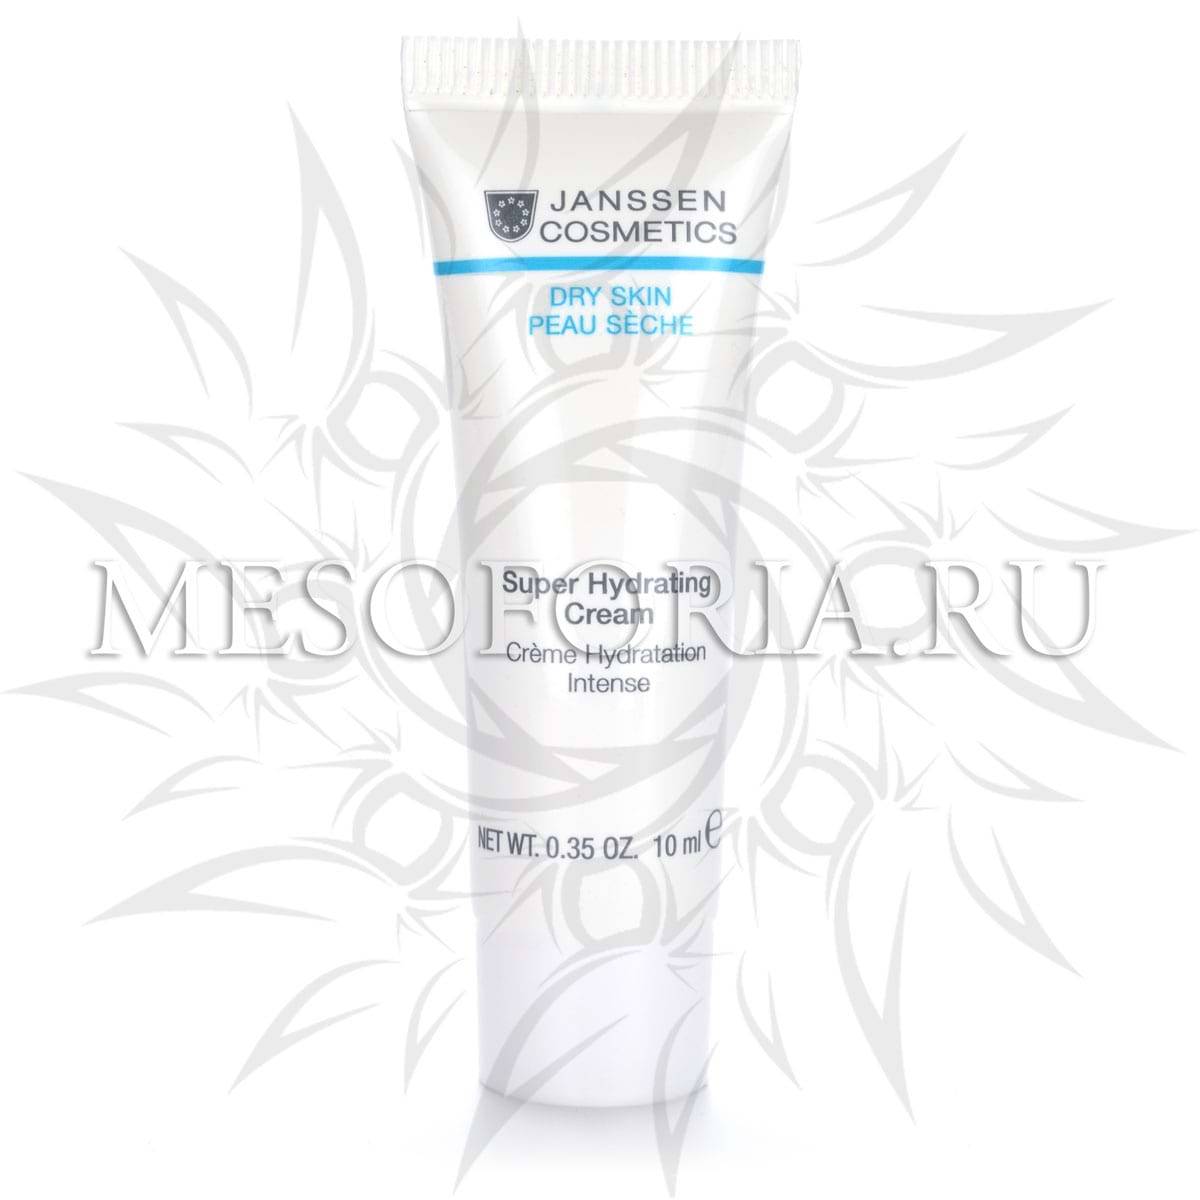 Суперувлажняющий крем легкой текстуры / Super Hydrating Cream, Dry Skin, Janssen Cosmetics (Янсен косметика), 10 мл